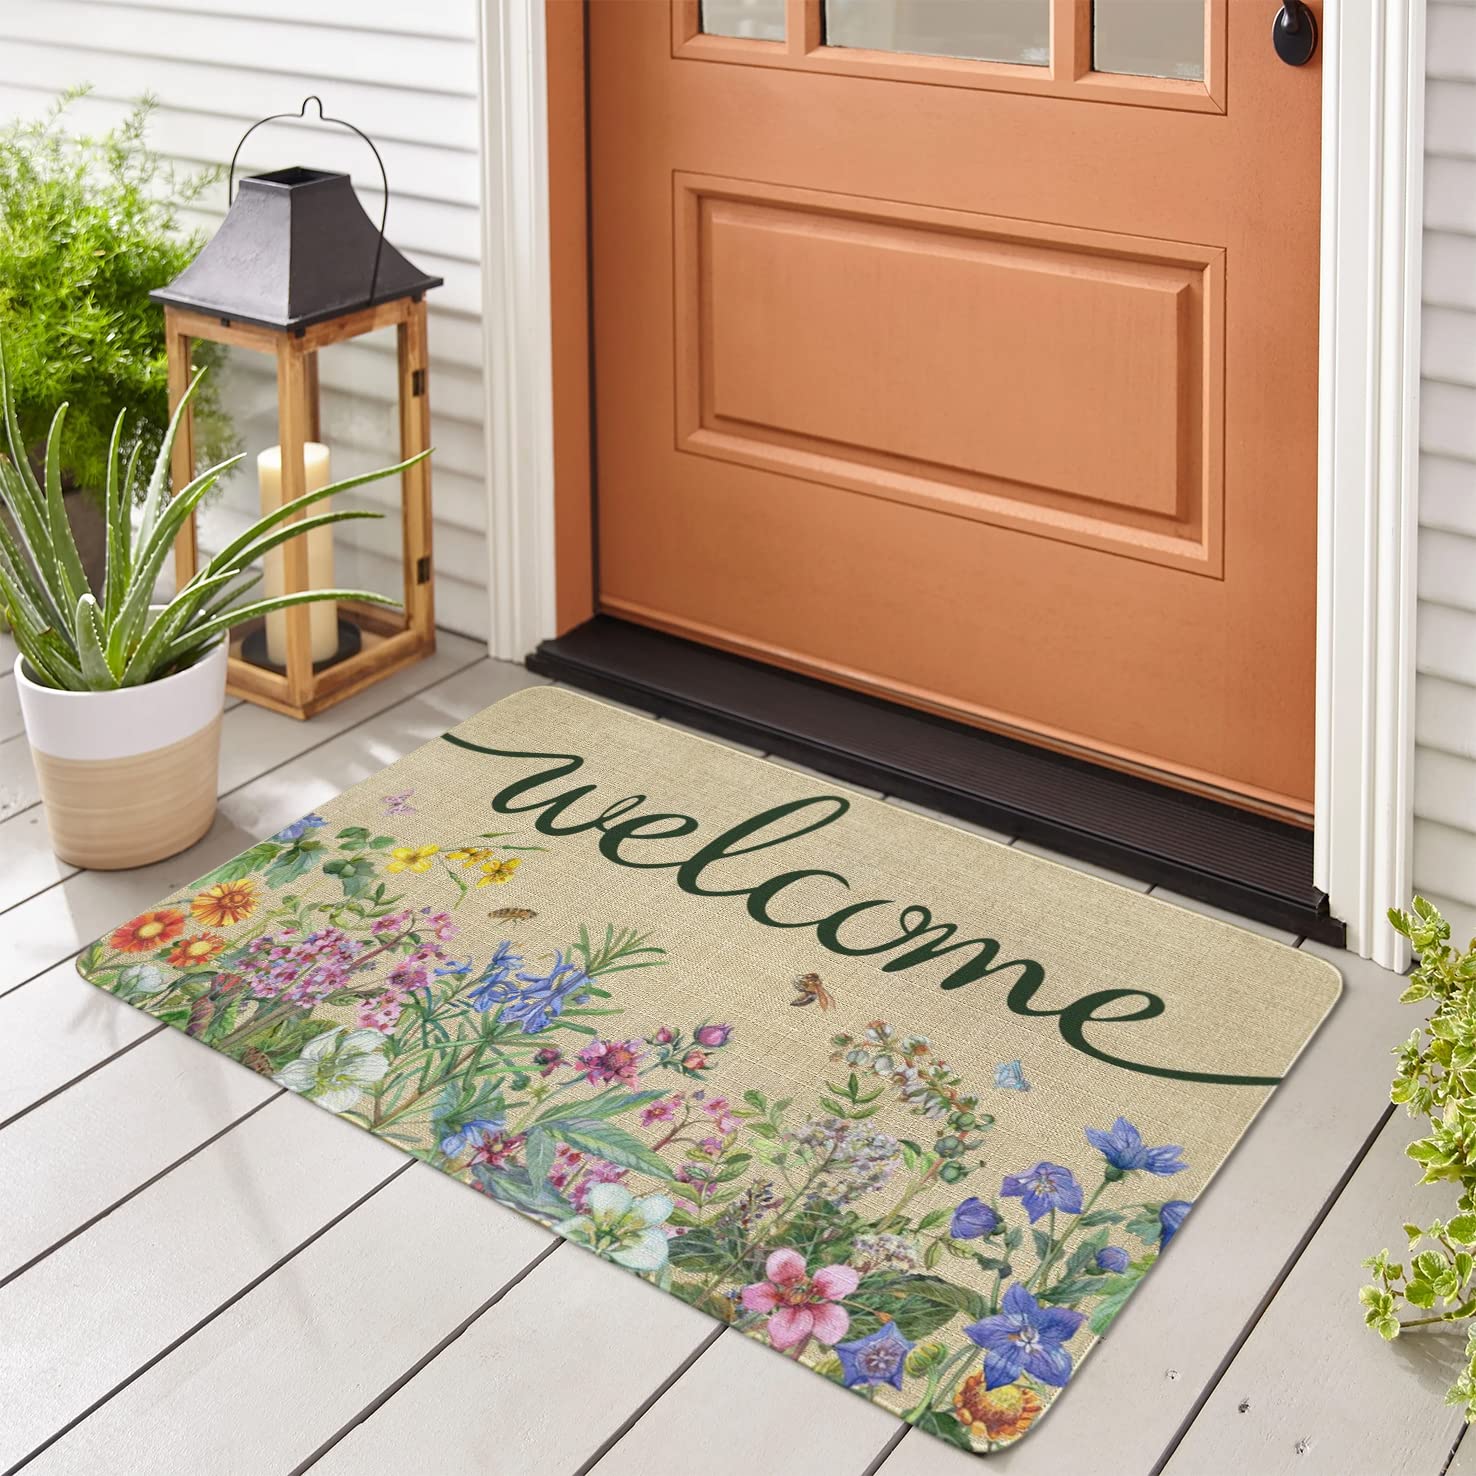 Ghroiep Welcome Floral Decor Doormat, Home Spring Summer Flower Front Door Mats, Indoor Outdoor Non Slip Reusable Entrance Rug 17"x30"